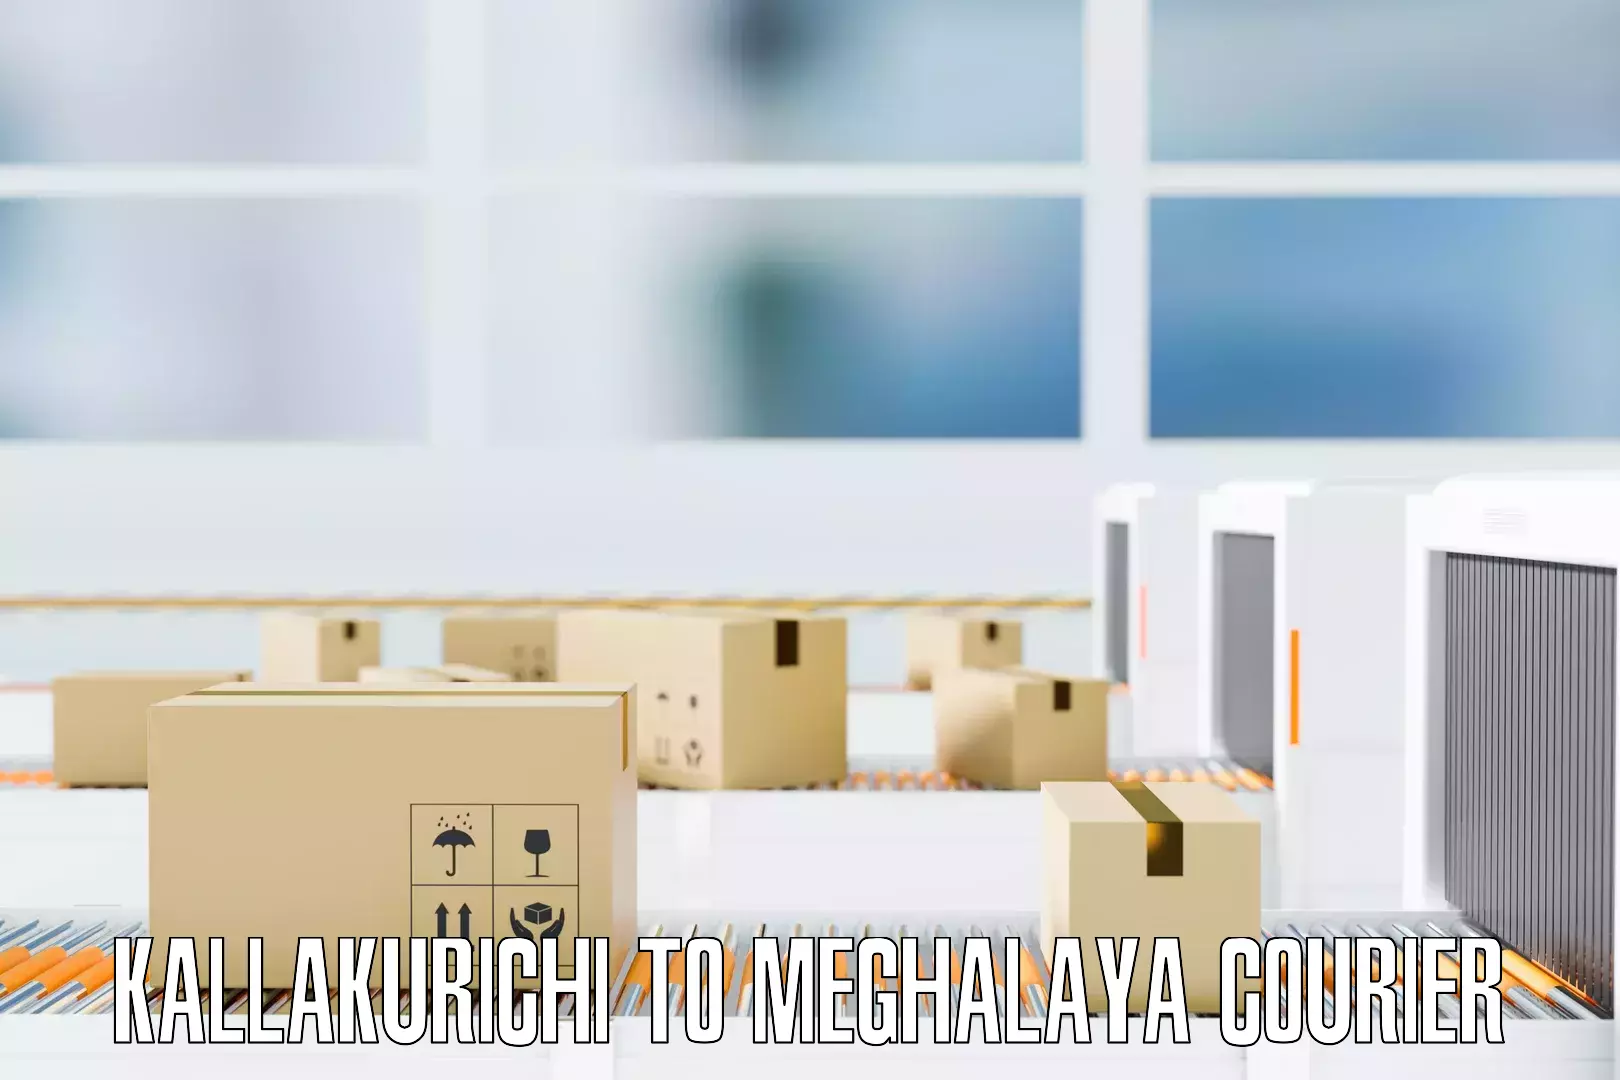 Seamless moving process Kallakurichi to Meghalaya